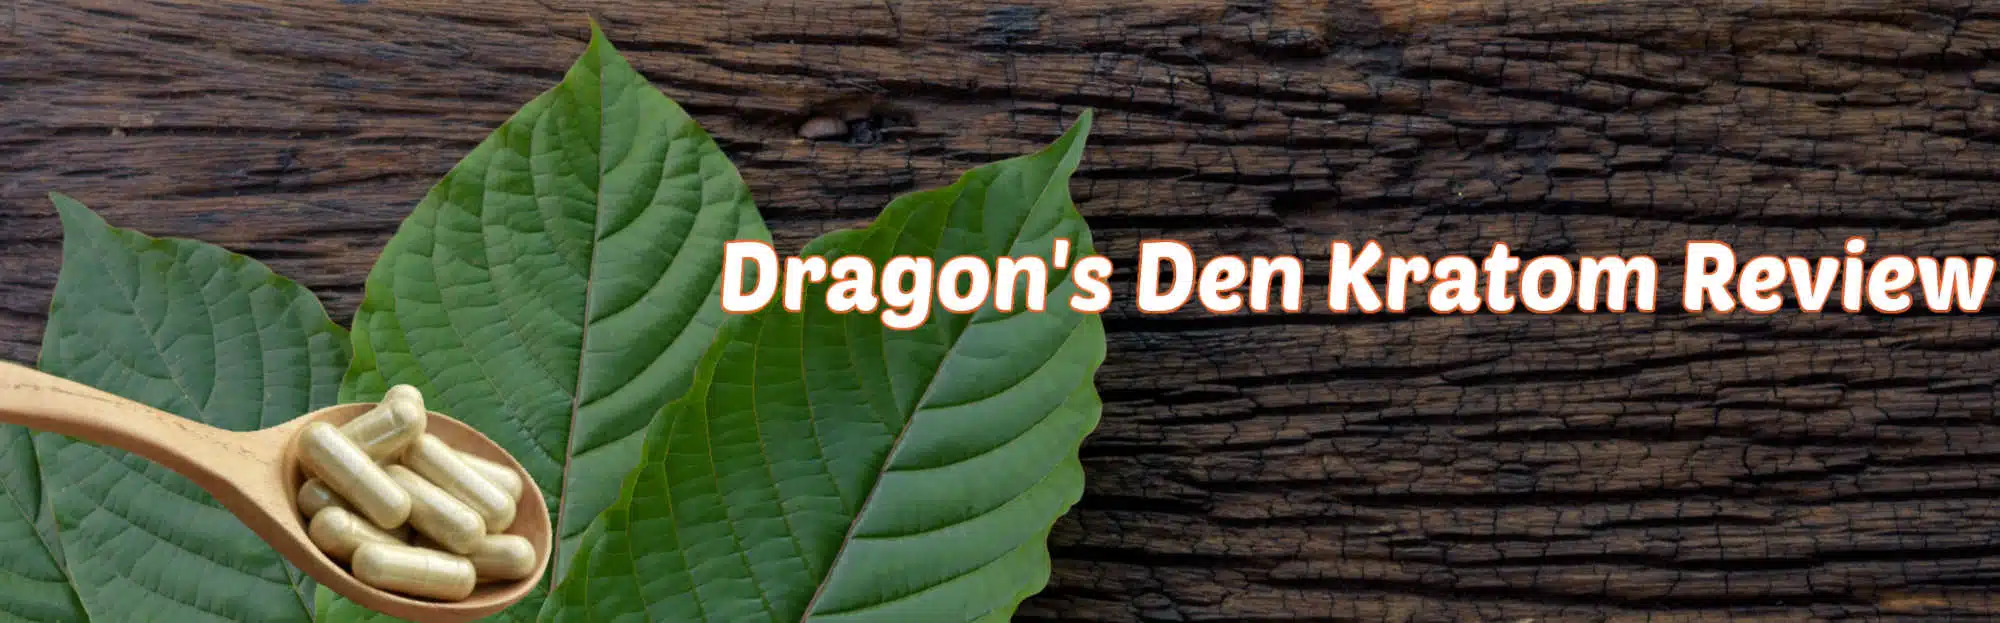 Dragon's den kratom review banner